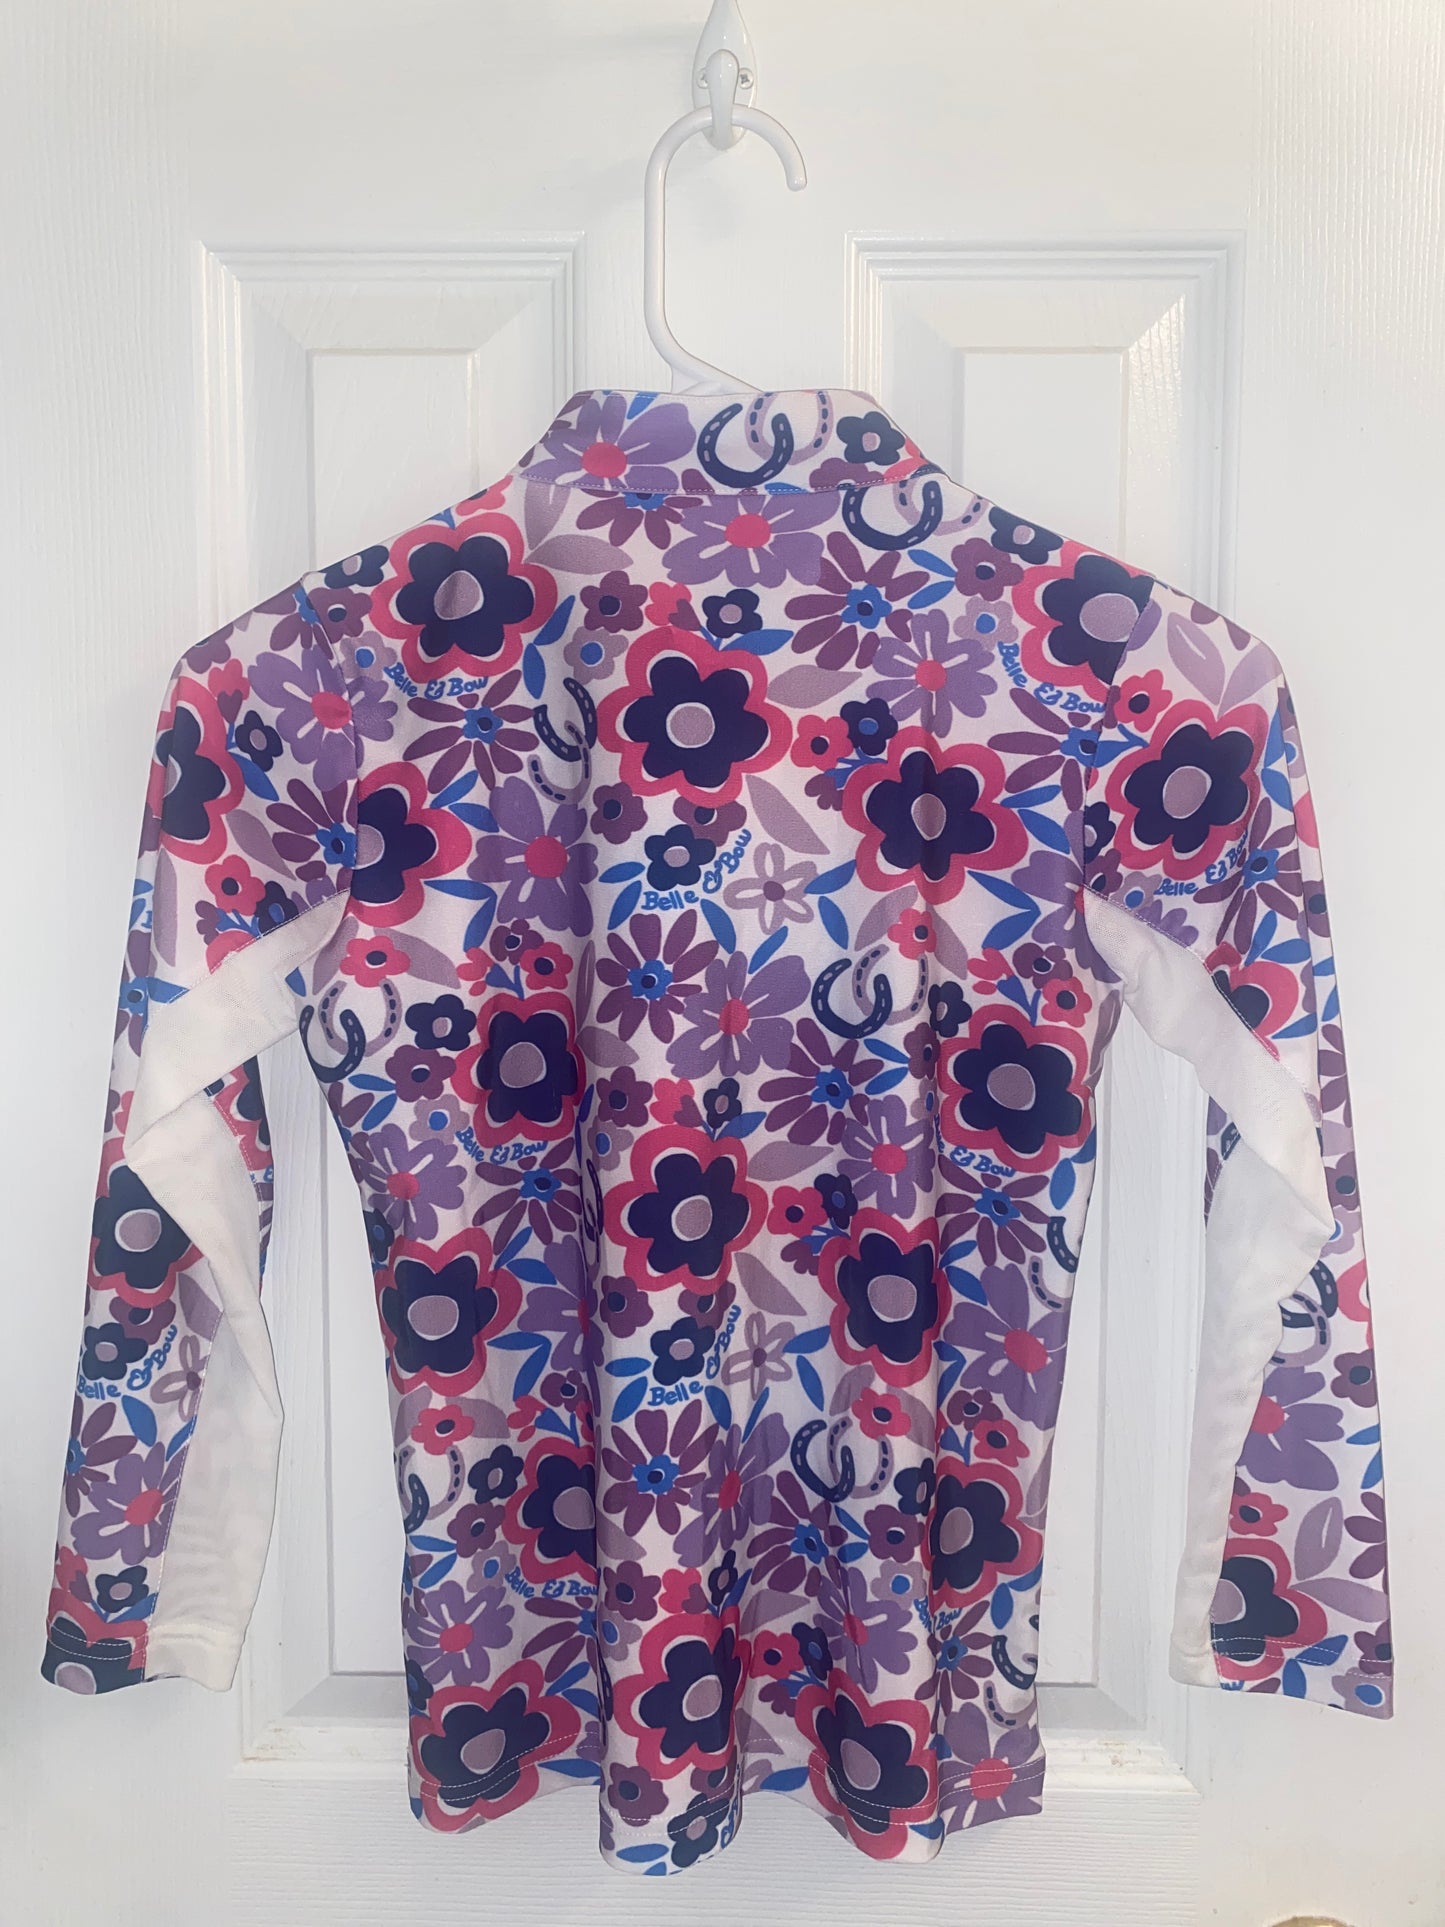 Flower Power Sun Shirt - Long Sleeves